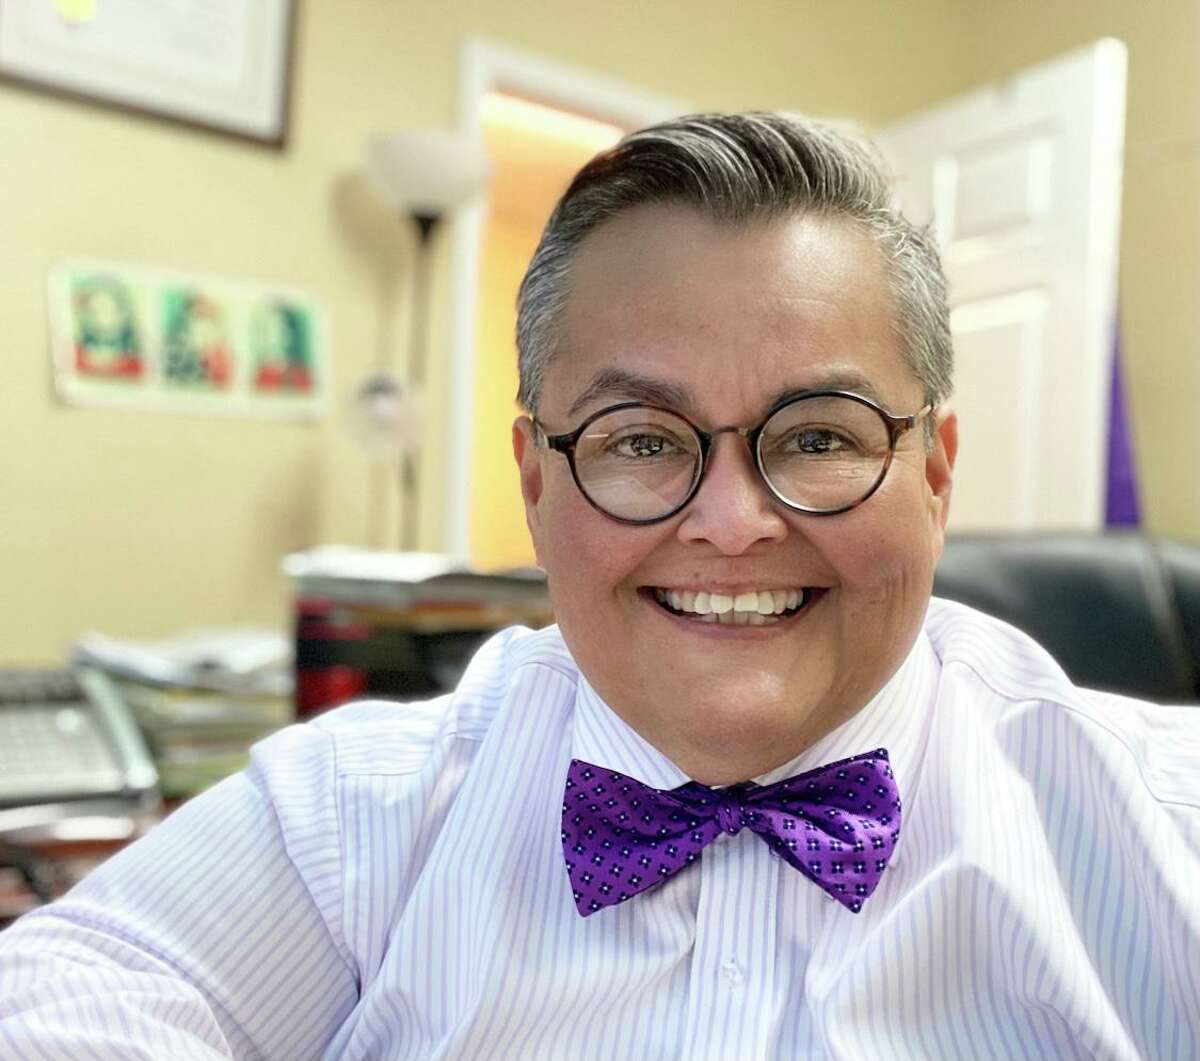 Maria Salazar is a San Antonio attorney and LGBTQ activist.